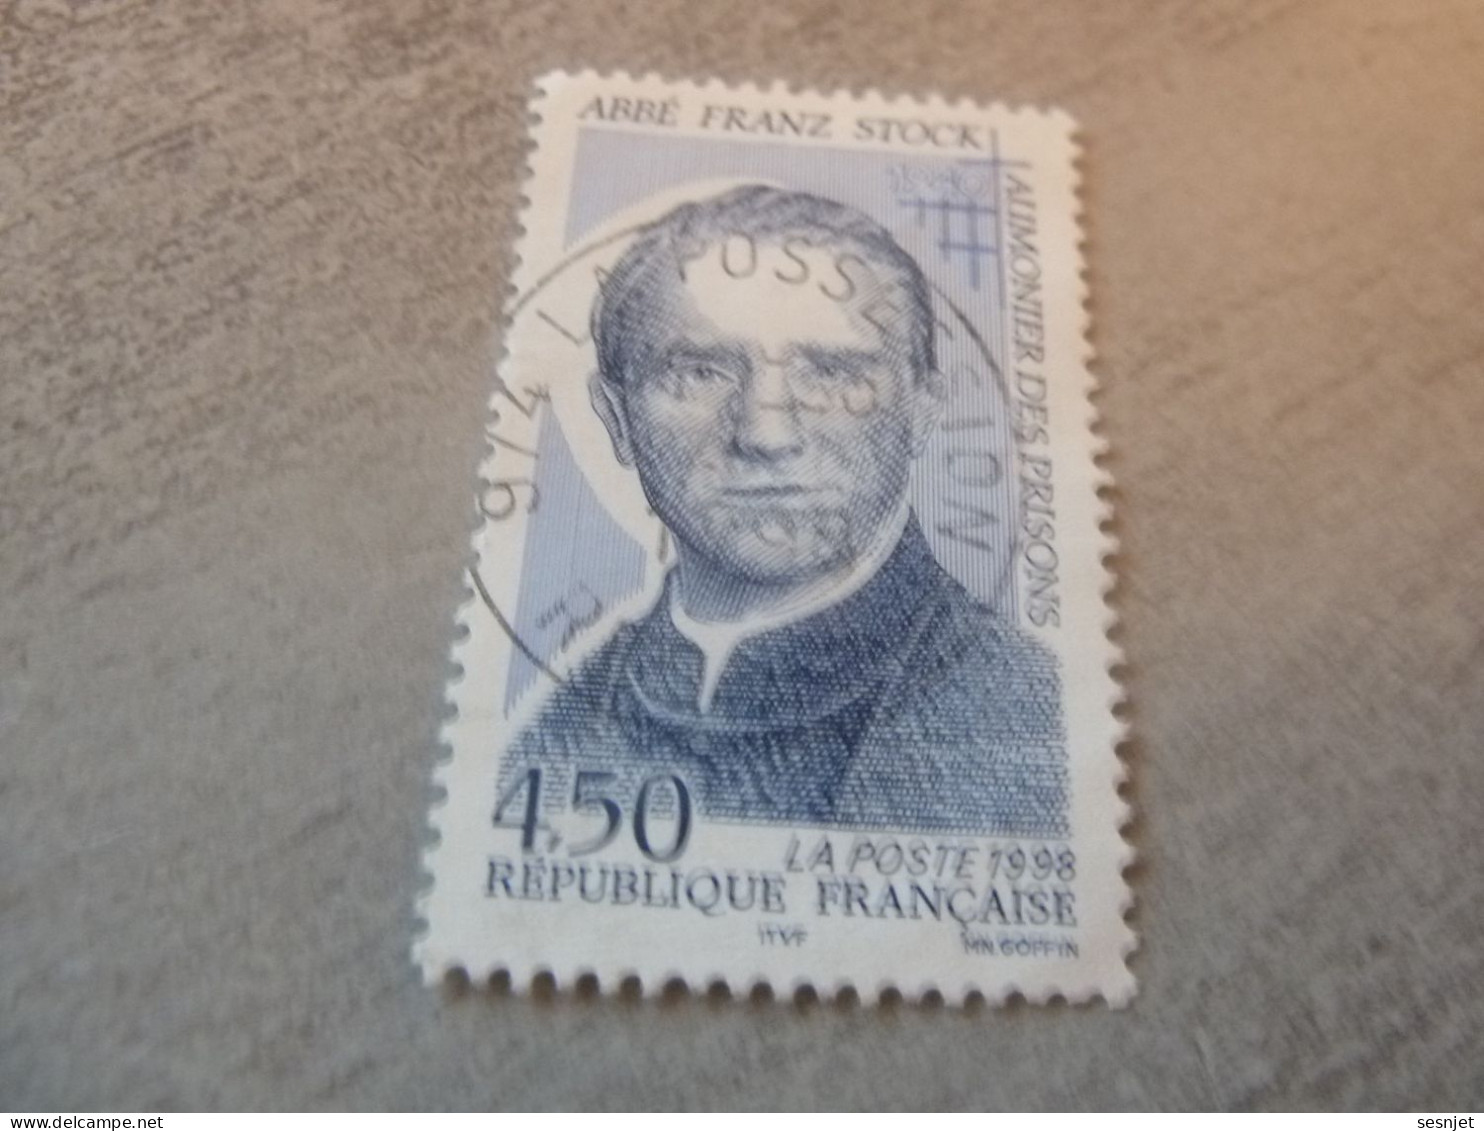 Abbé Franz Stock (1904-1948) Aumonier - 4f.50 - Yt 3138 - Bleu - Oblitéré - Année 1998 - - Oblitérés